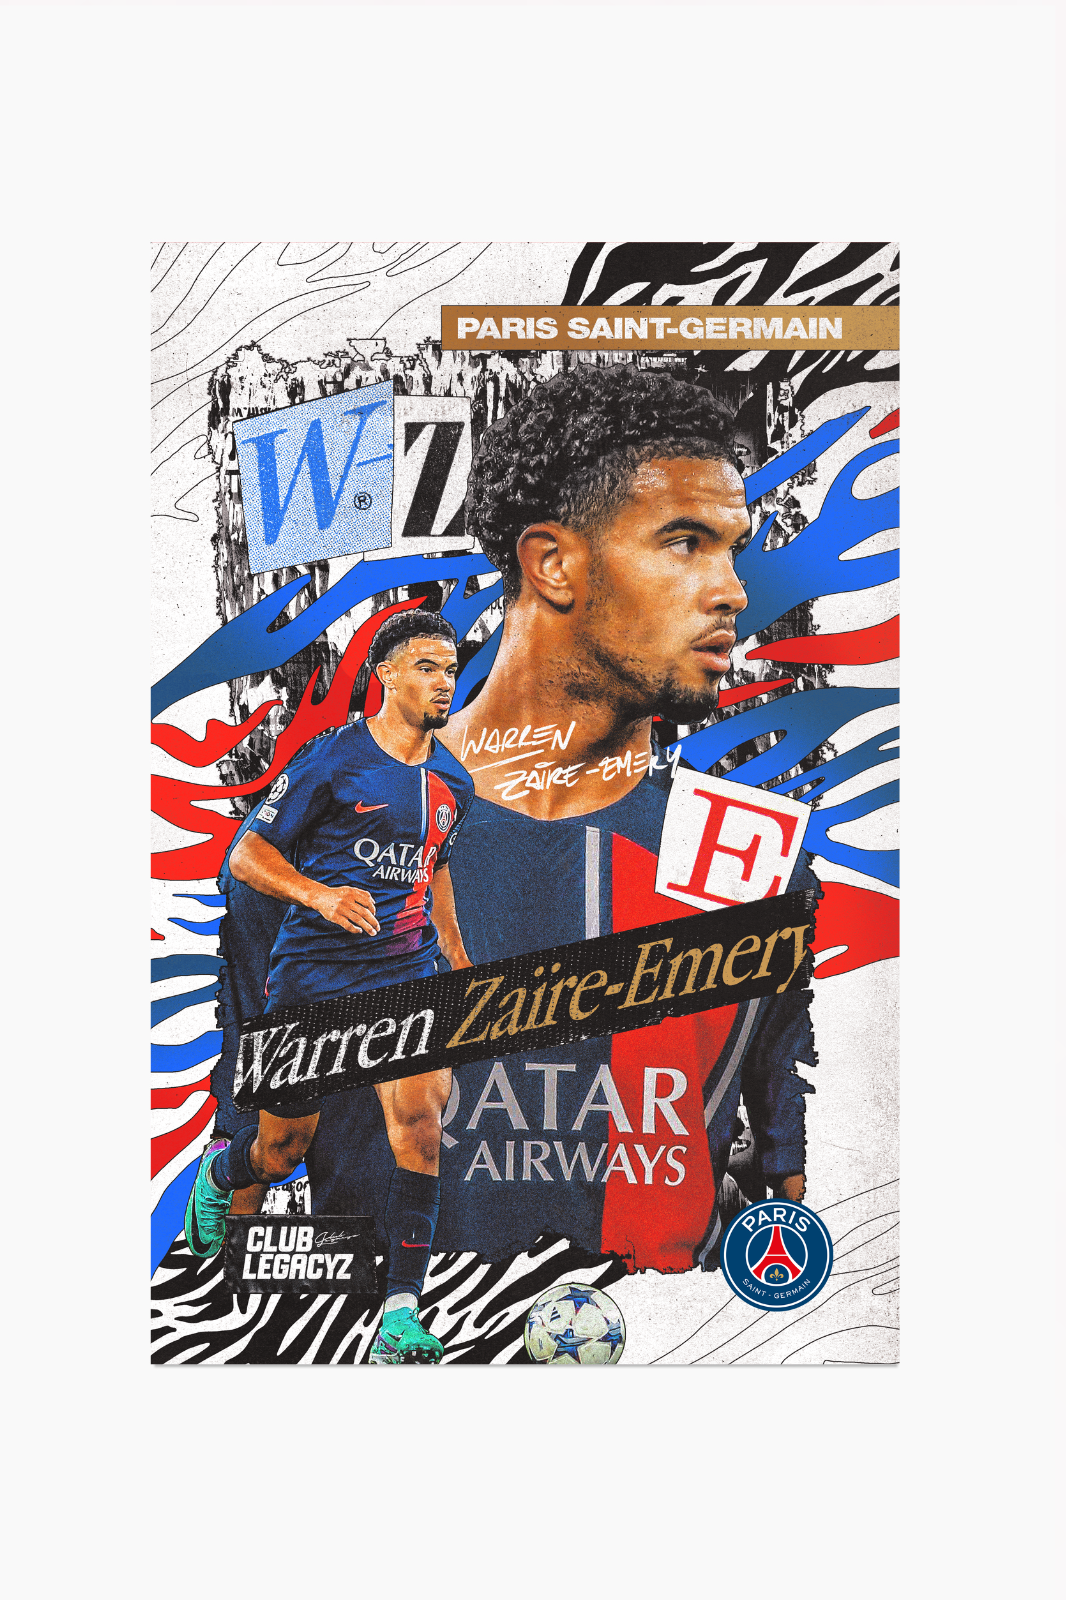 Paris Saint-Germain Print - Mbappé 22-23 joueurs PSG Poster Art